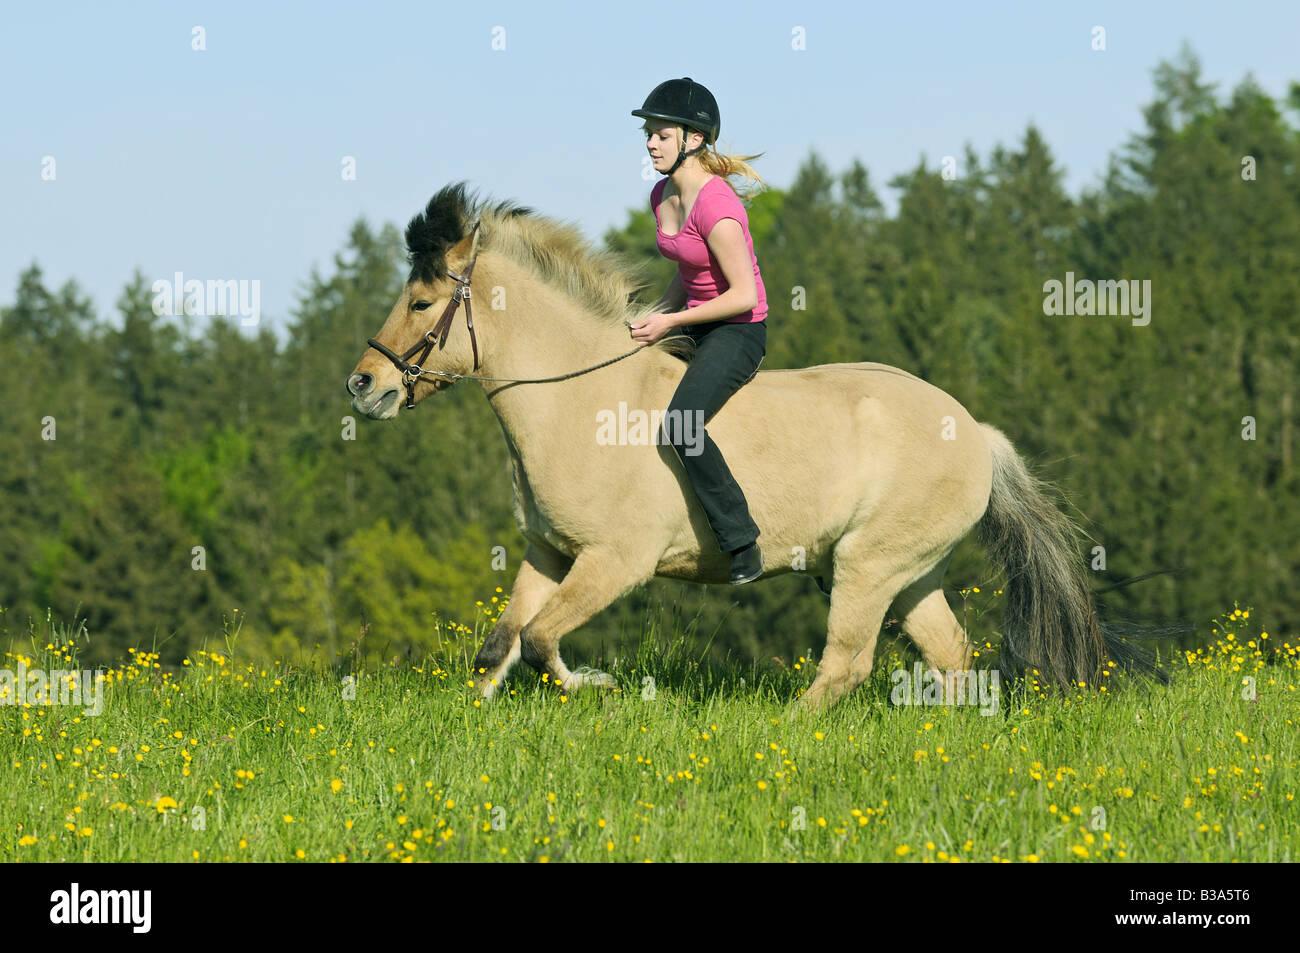 Girl riding on Icelandic horse without saddle Stock Photo